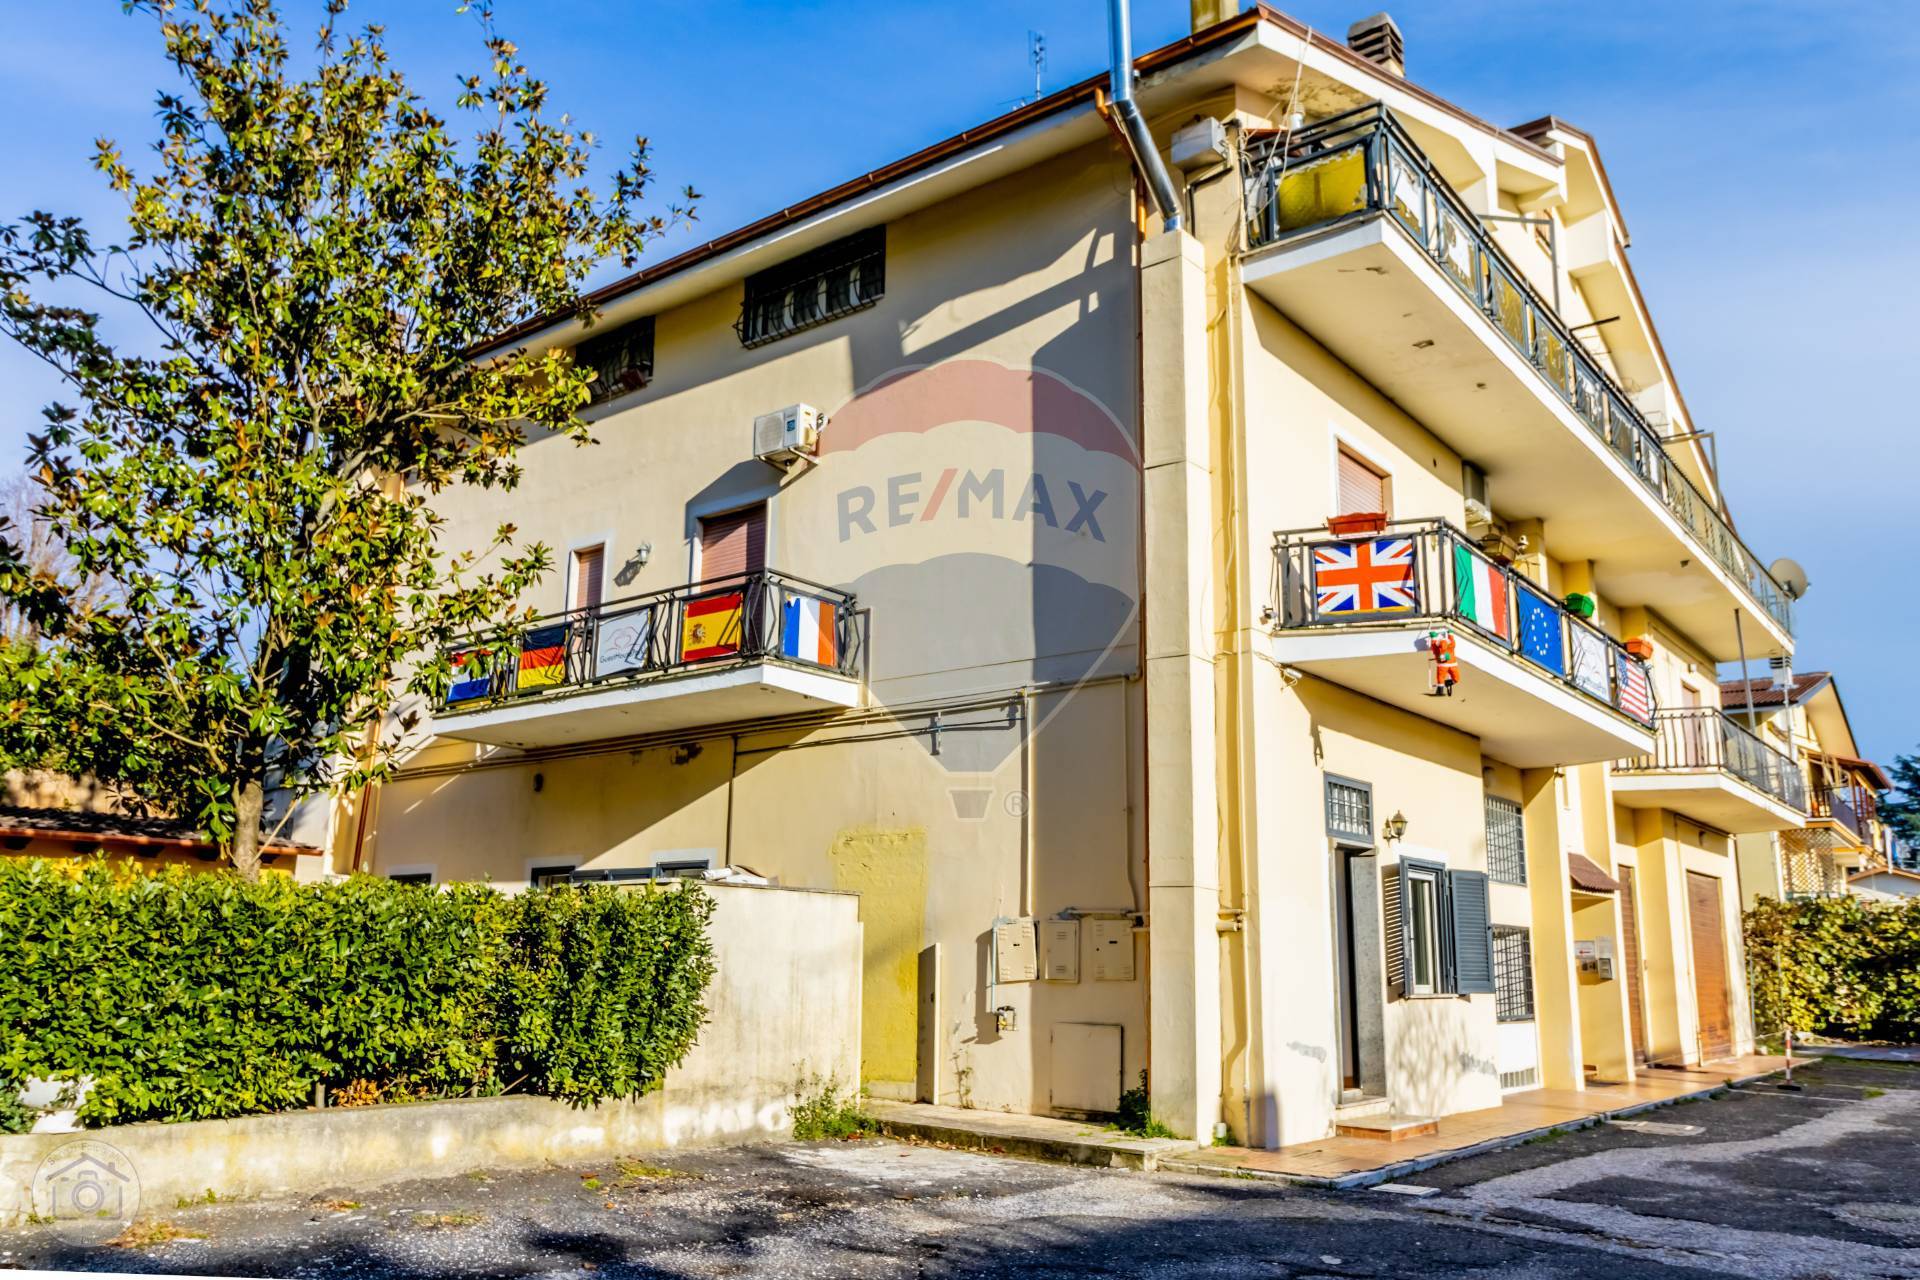 Appartamento in vendita a Valmontone, 3 locali, prezzo € 85.000 | CambioCasa.it